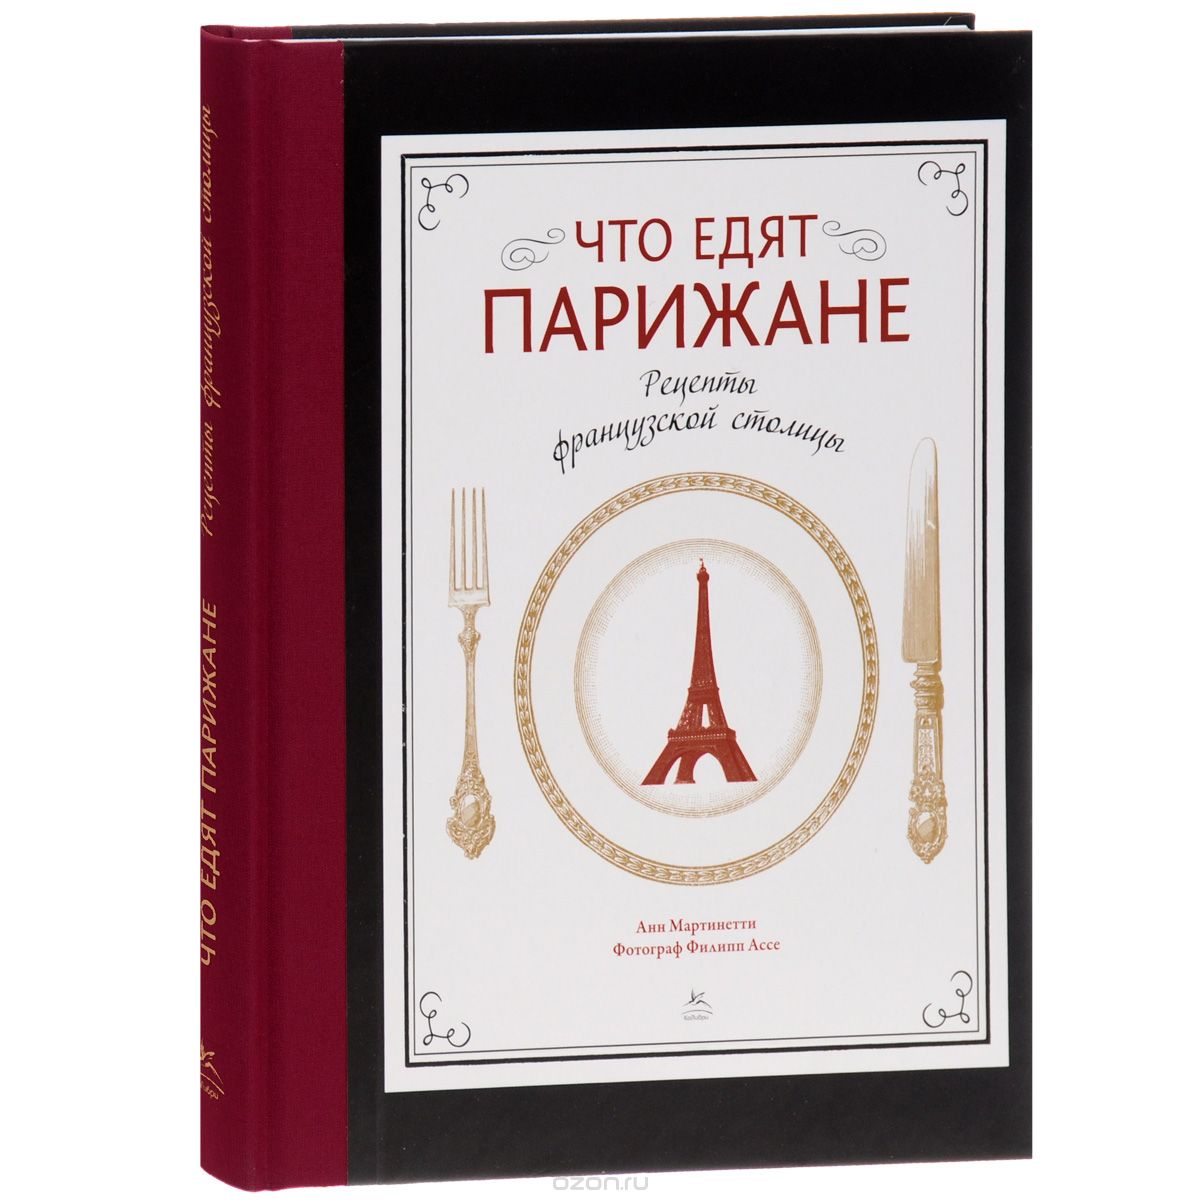 Скачать книгу "Что едят парижане. Рецепты французской столицы, Анн Мартинетти"